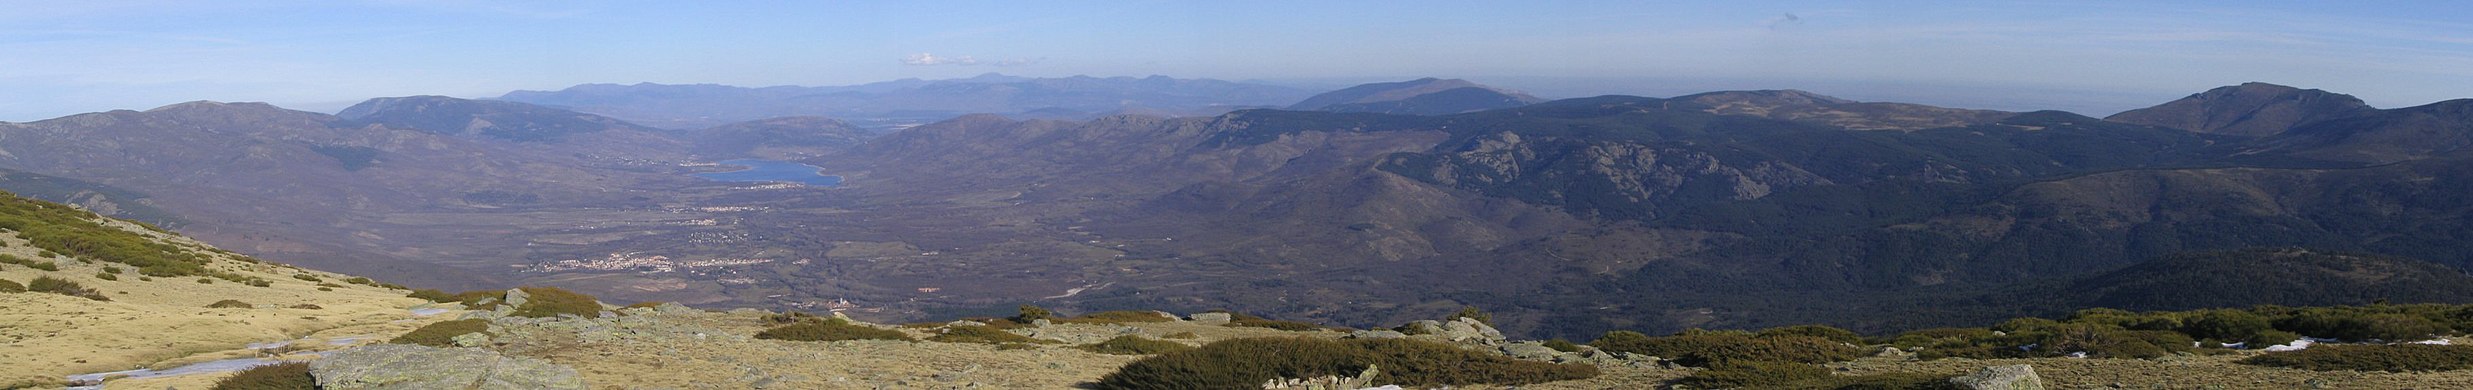 Español: Vista panorámica del Valle del Lozoya y Rascafría, perteneciente a la Sierra de Guadarrama (España). Deutsch: Das Lozoya-Tal und Rascafría von der Sierra de Guadarrama aus